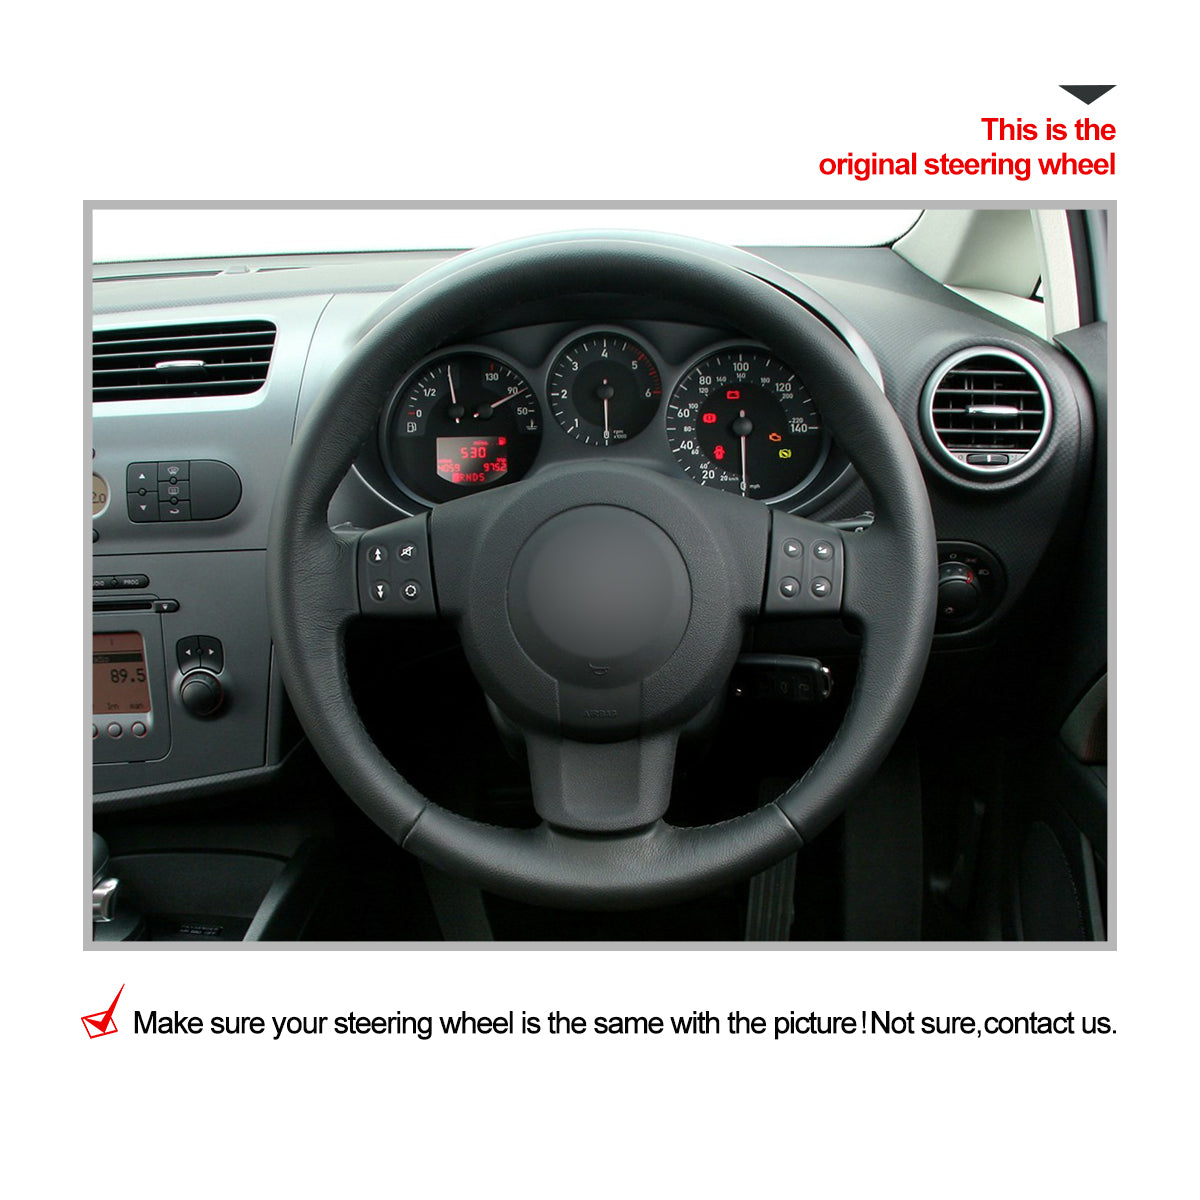 Car steering wheel cover for Seat Leon (MK2 1P) 2005-2009 / Ibiza (6L) 2005-2009 / Altea 2004-2009 / Altea XL 2007-2009 / Toledo 2004-2008